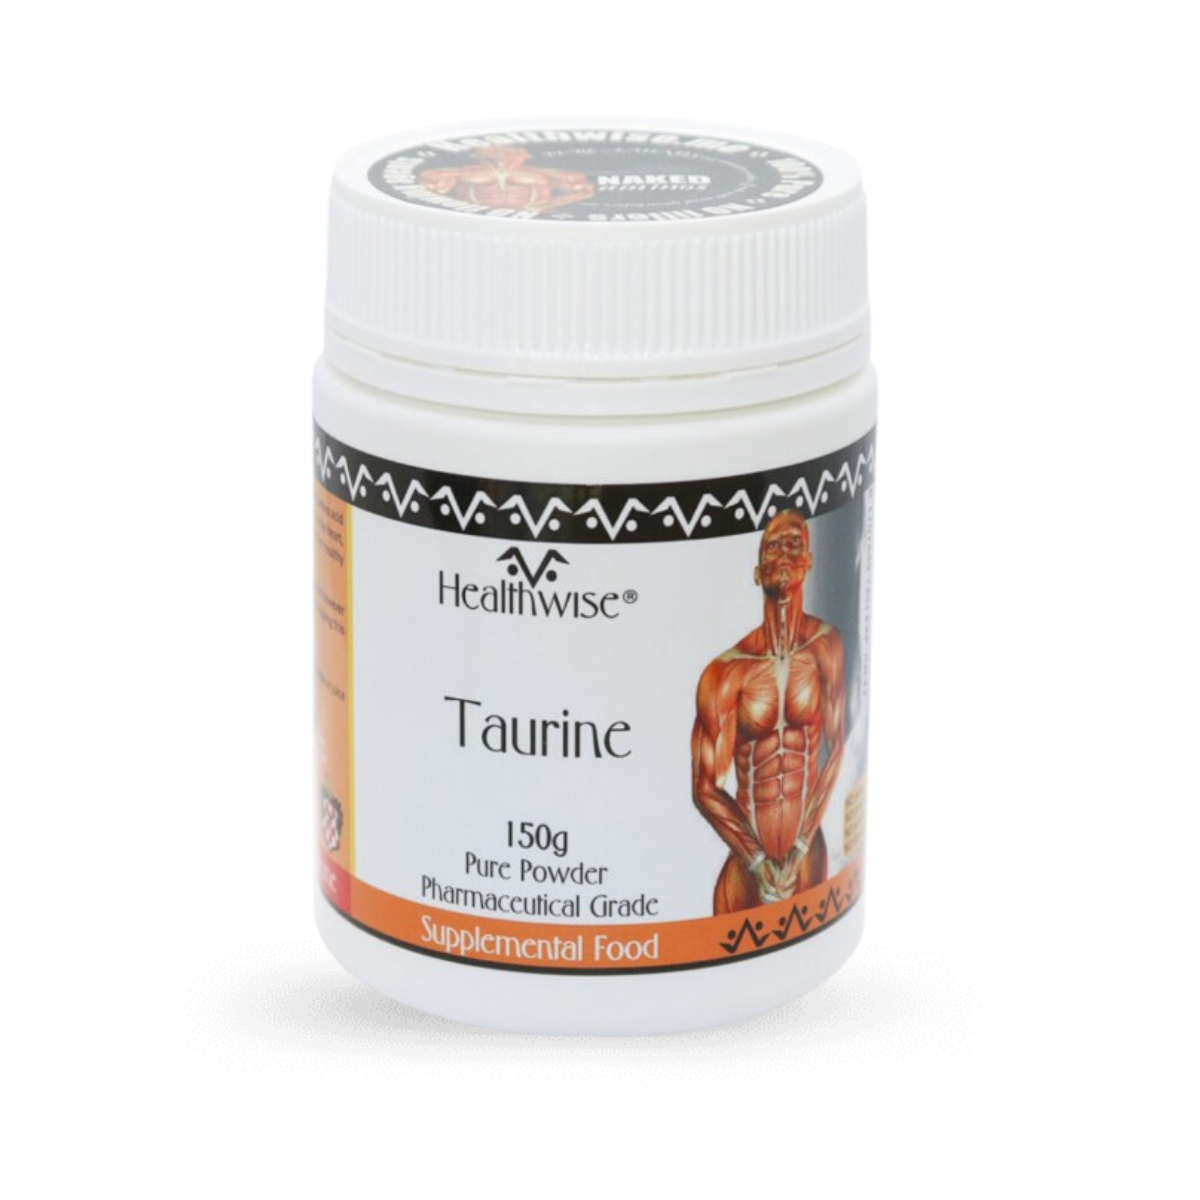 HealthWise Taurine Powder 150g